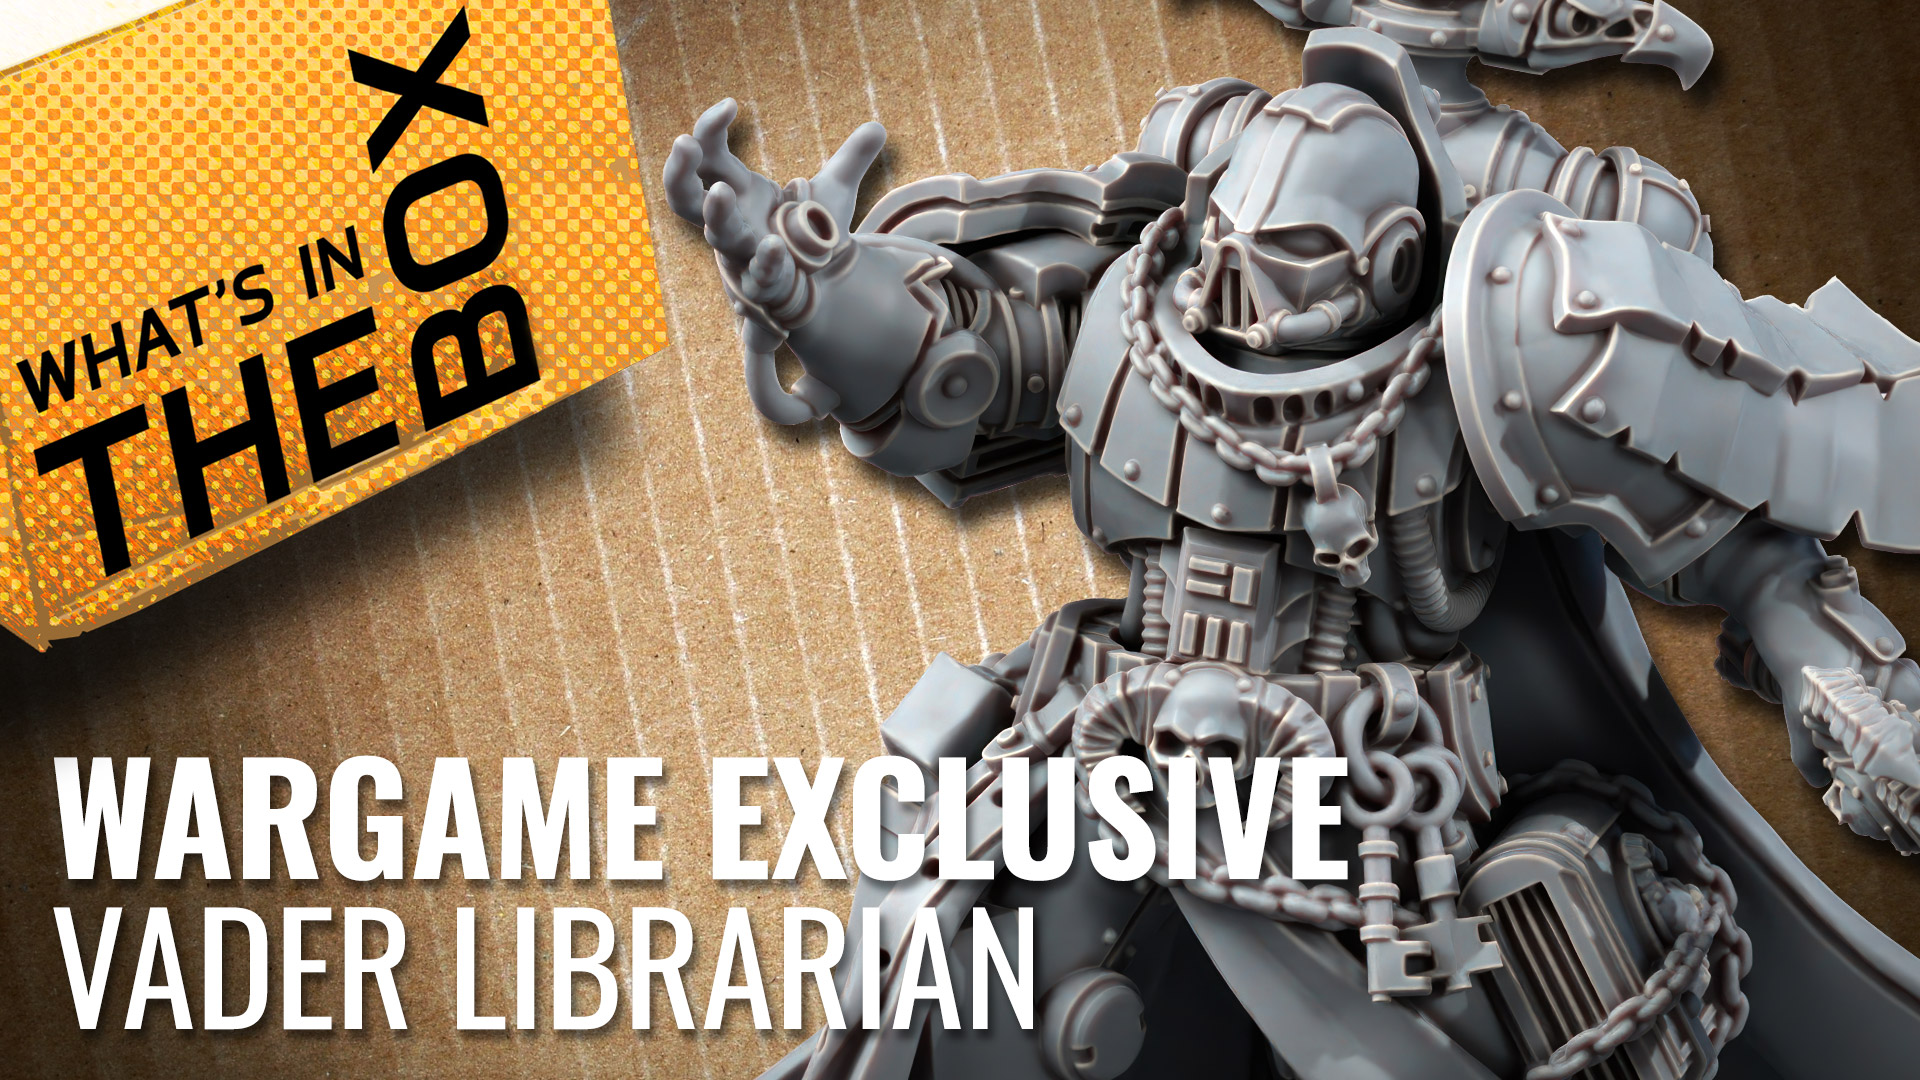 Wargame-Exclusive_Vader-Librarian-coverimage-V2